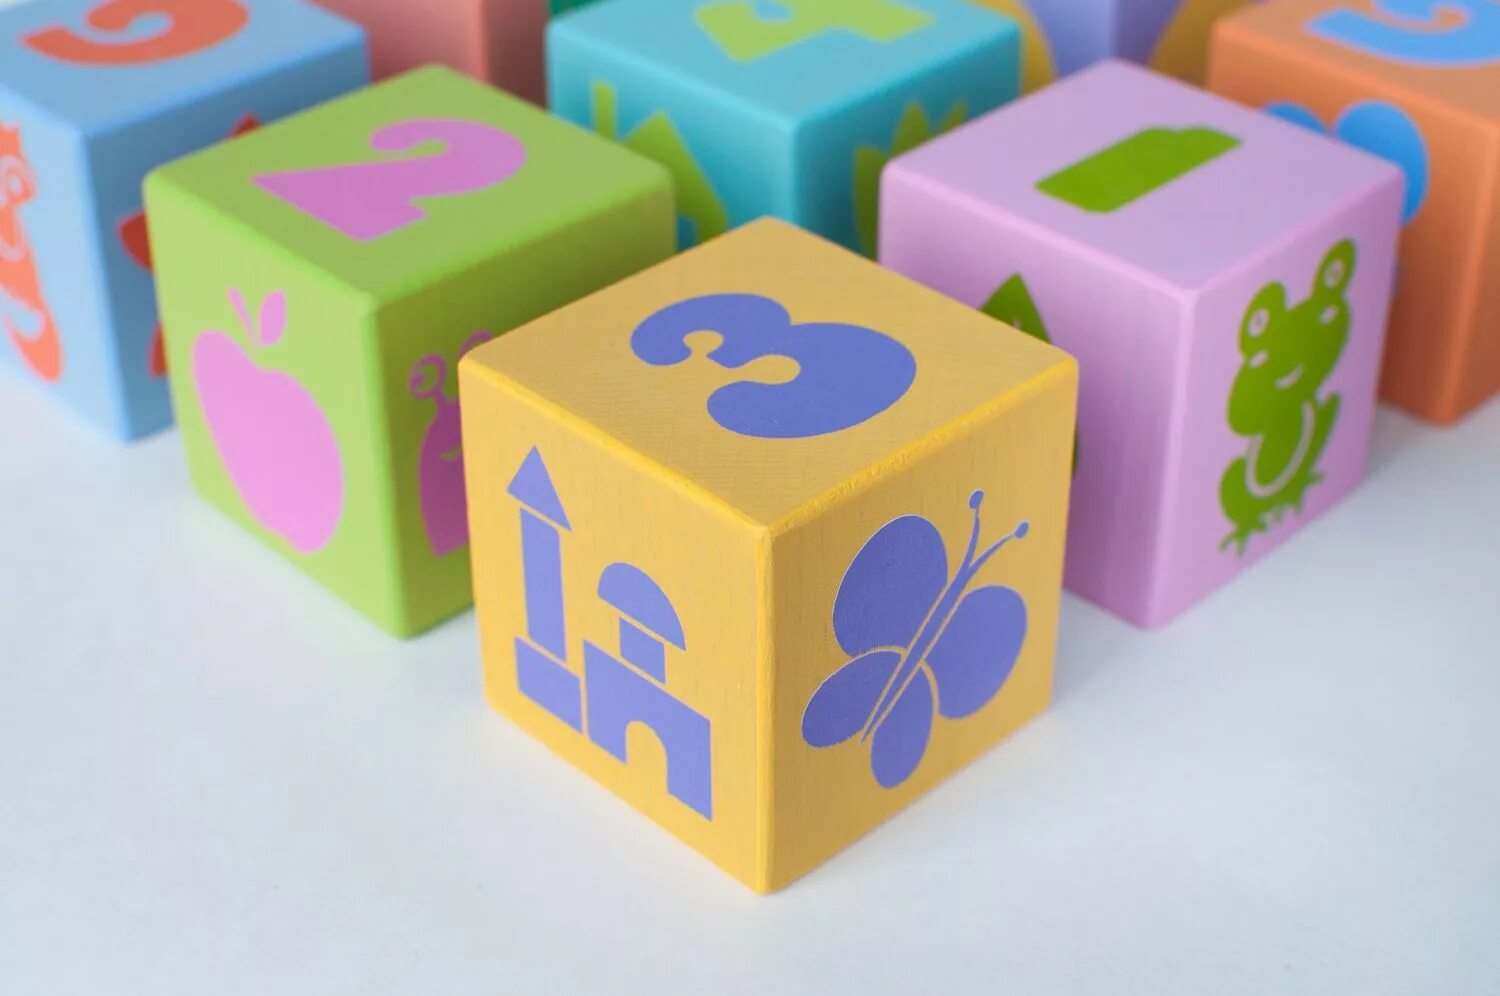 Cube детские. Детские кубики. Яркие кубики для детей. Деревянные игрушки кубики. Кубики в картинках.